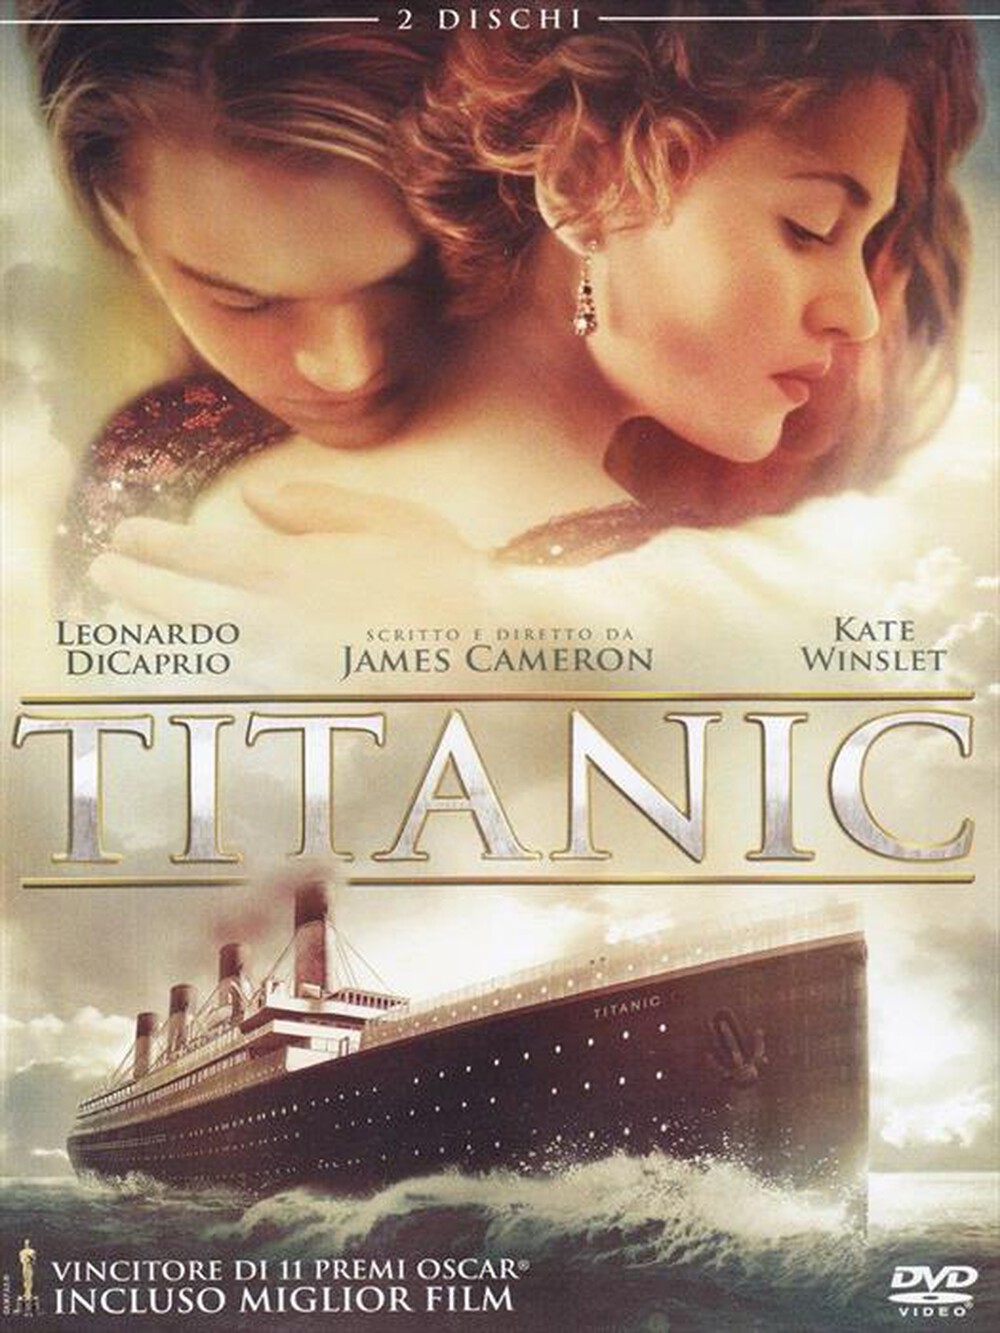 "WALT DISNEY - Titanic (2 Dvd) - "